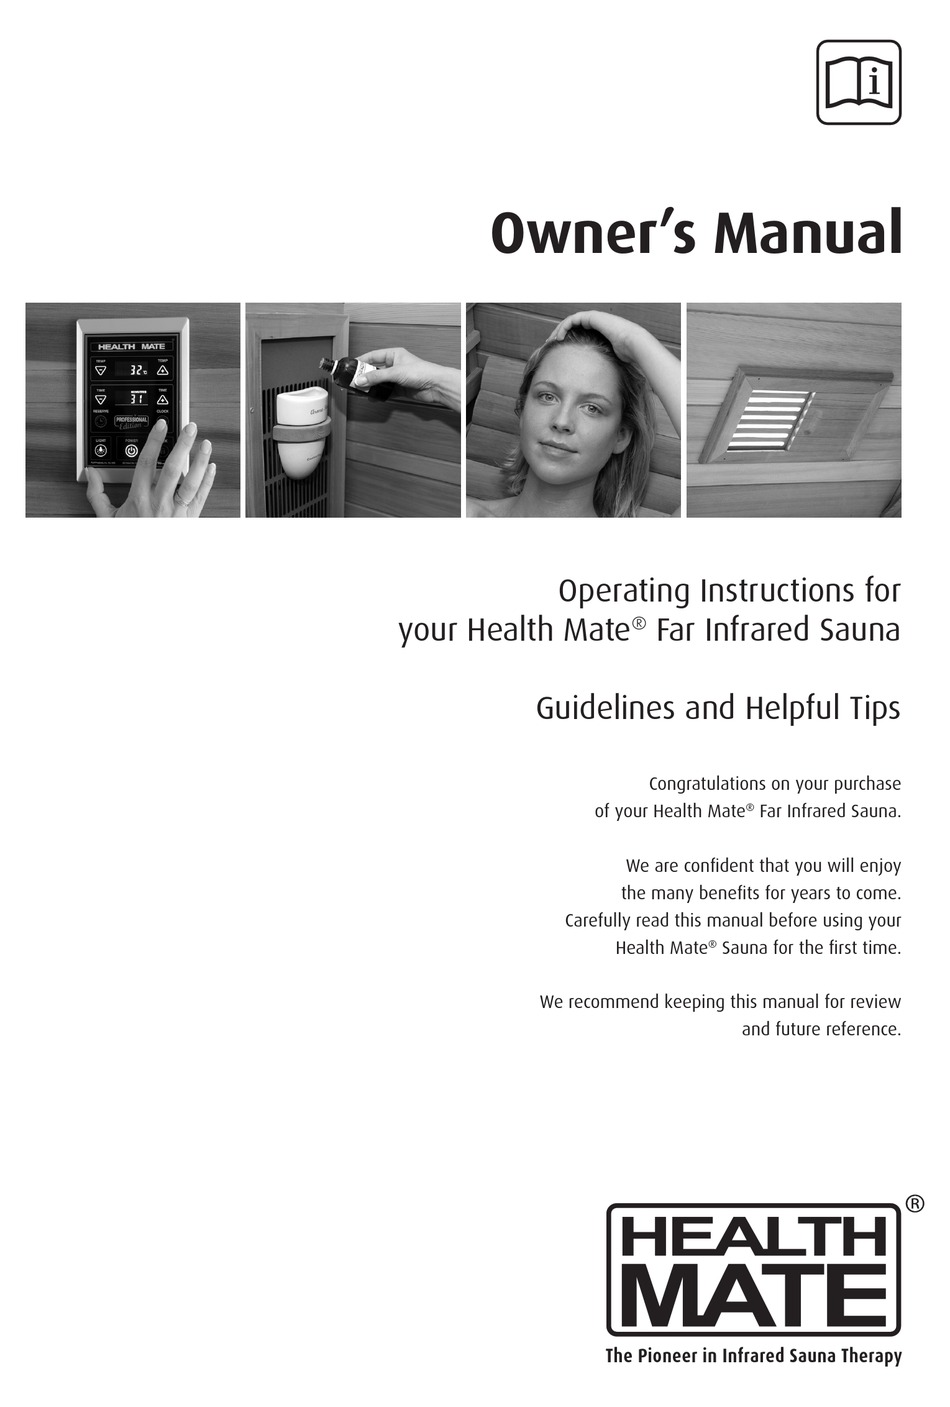 Health Mate Far Infrared Sauna Owners Manual Pdf Download Manualslib